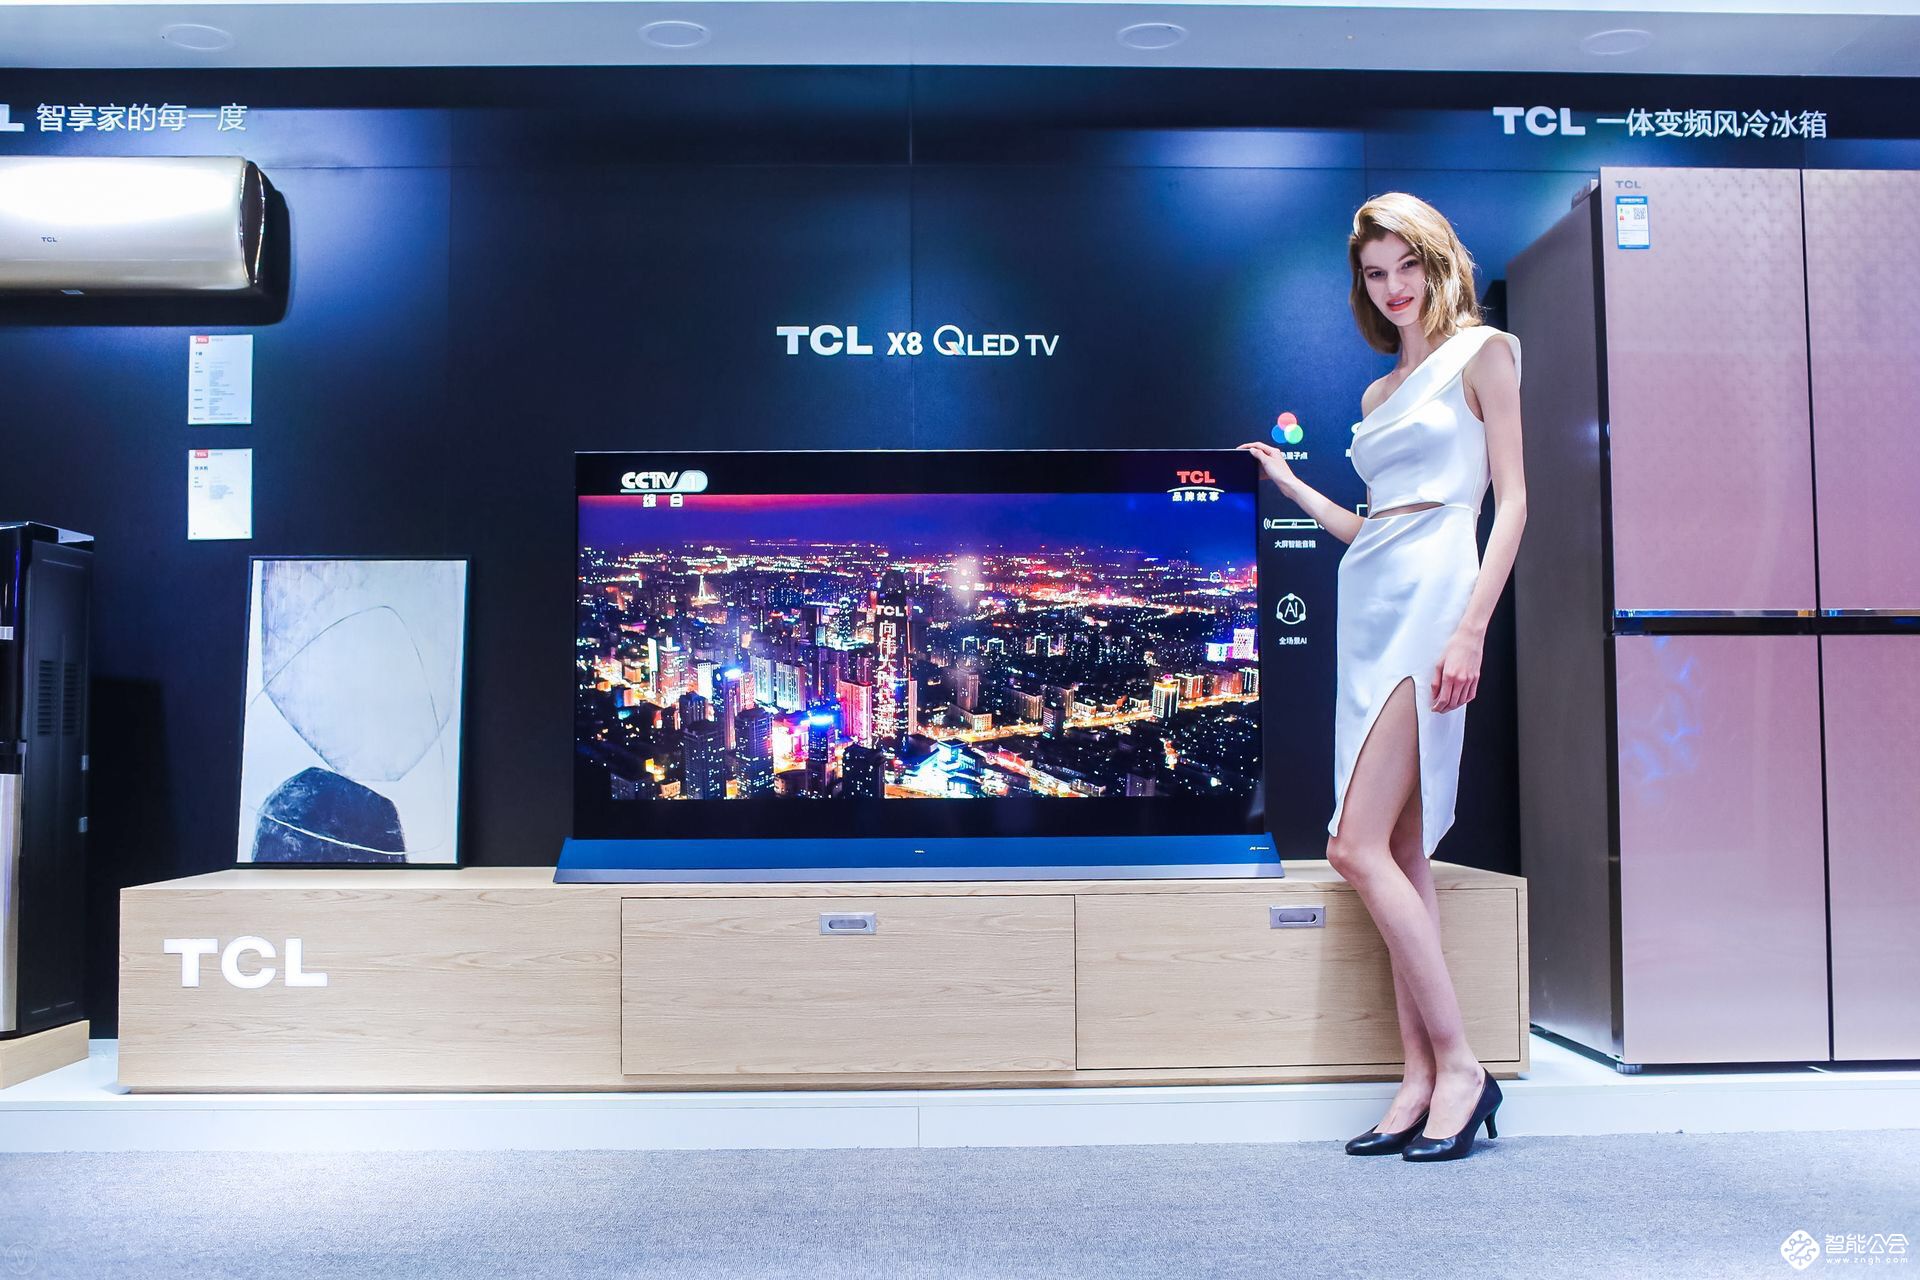 大国品牌TCL携手国美发布新旗舰X8 QLED TV 智能公会